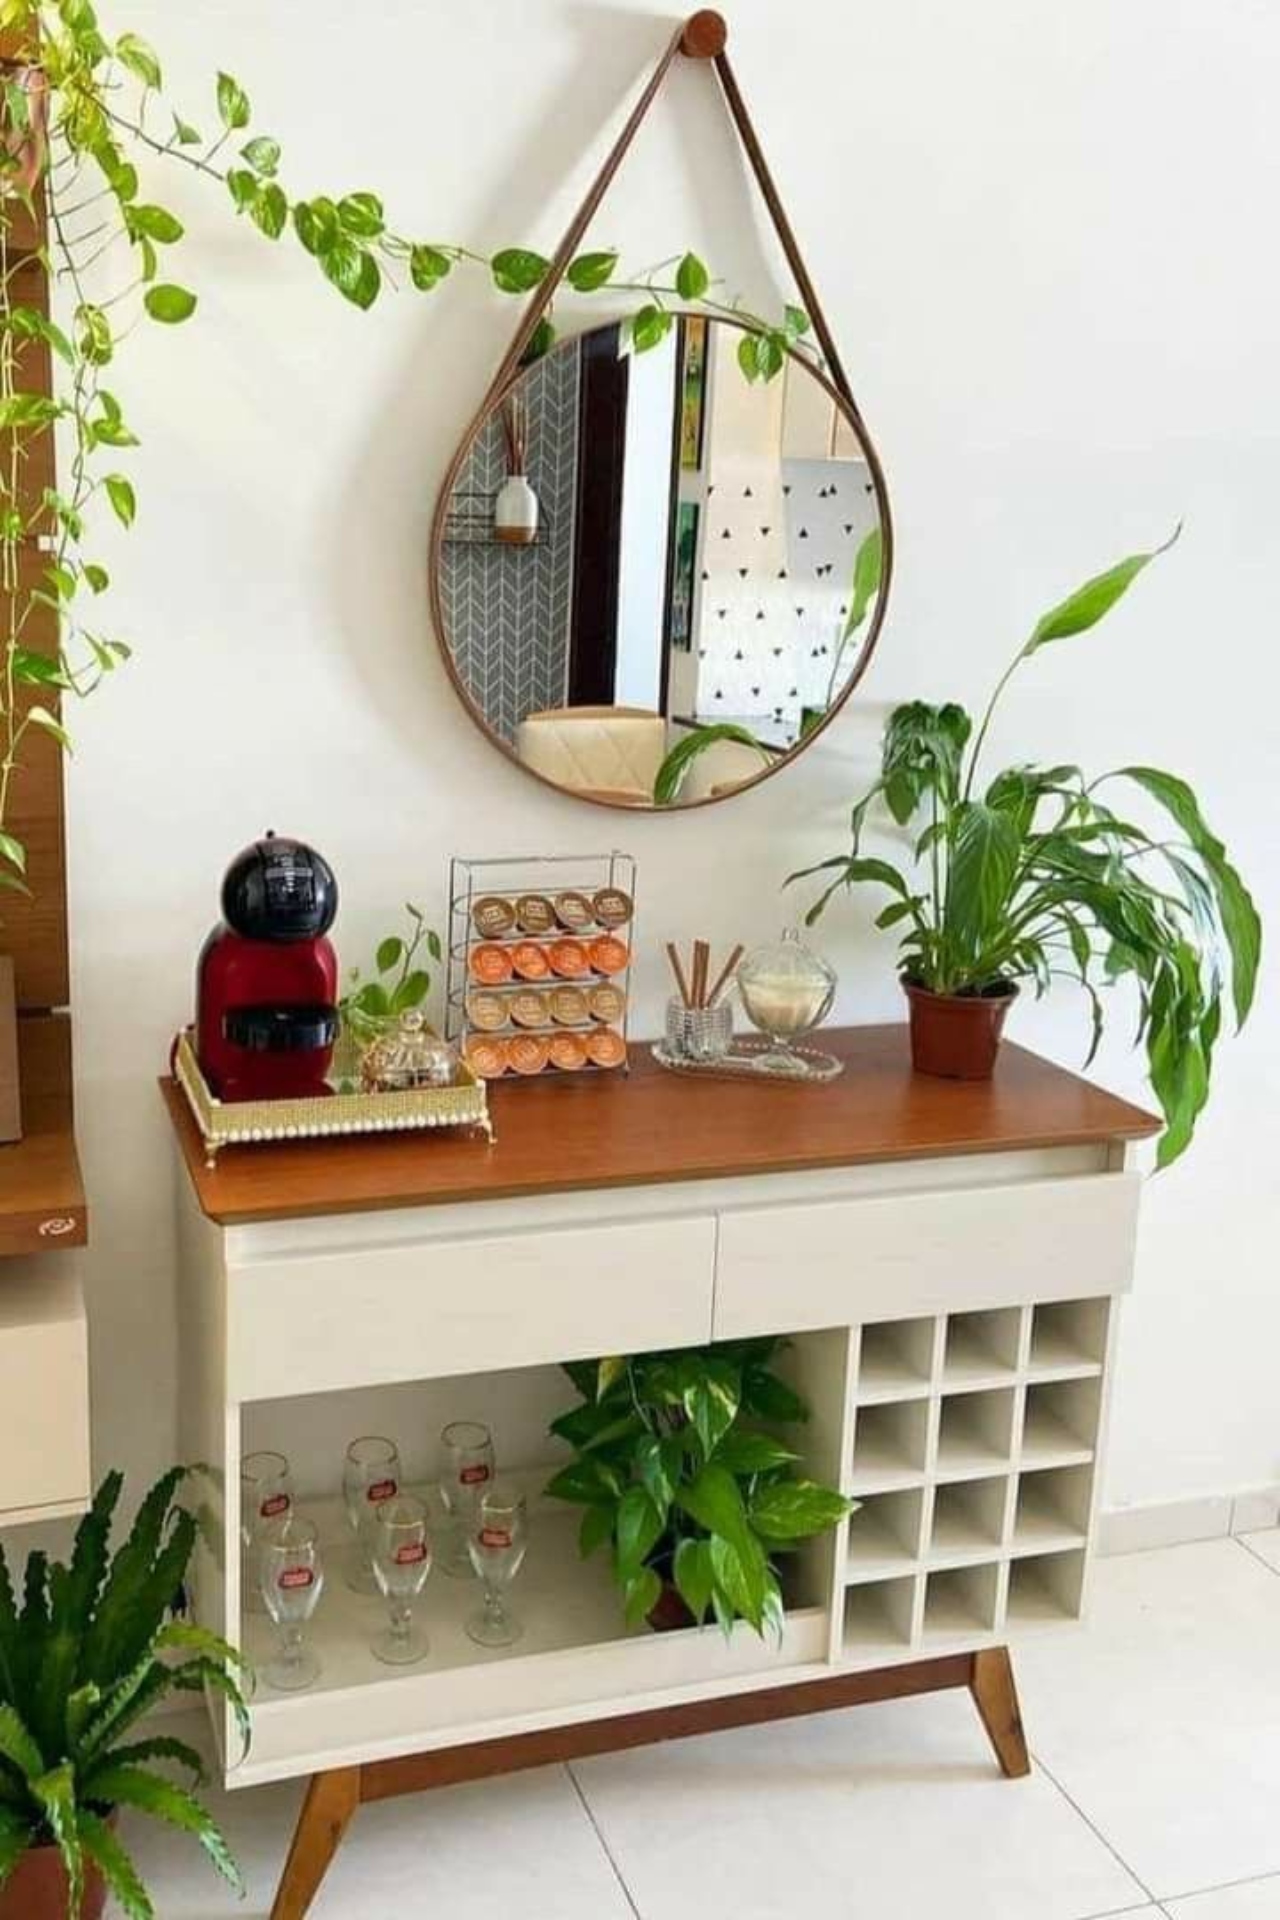 Espelhos e plantas também ajudam a decorar o ambiente do café